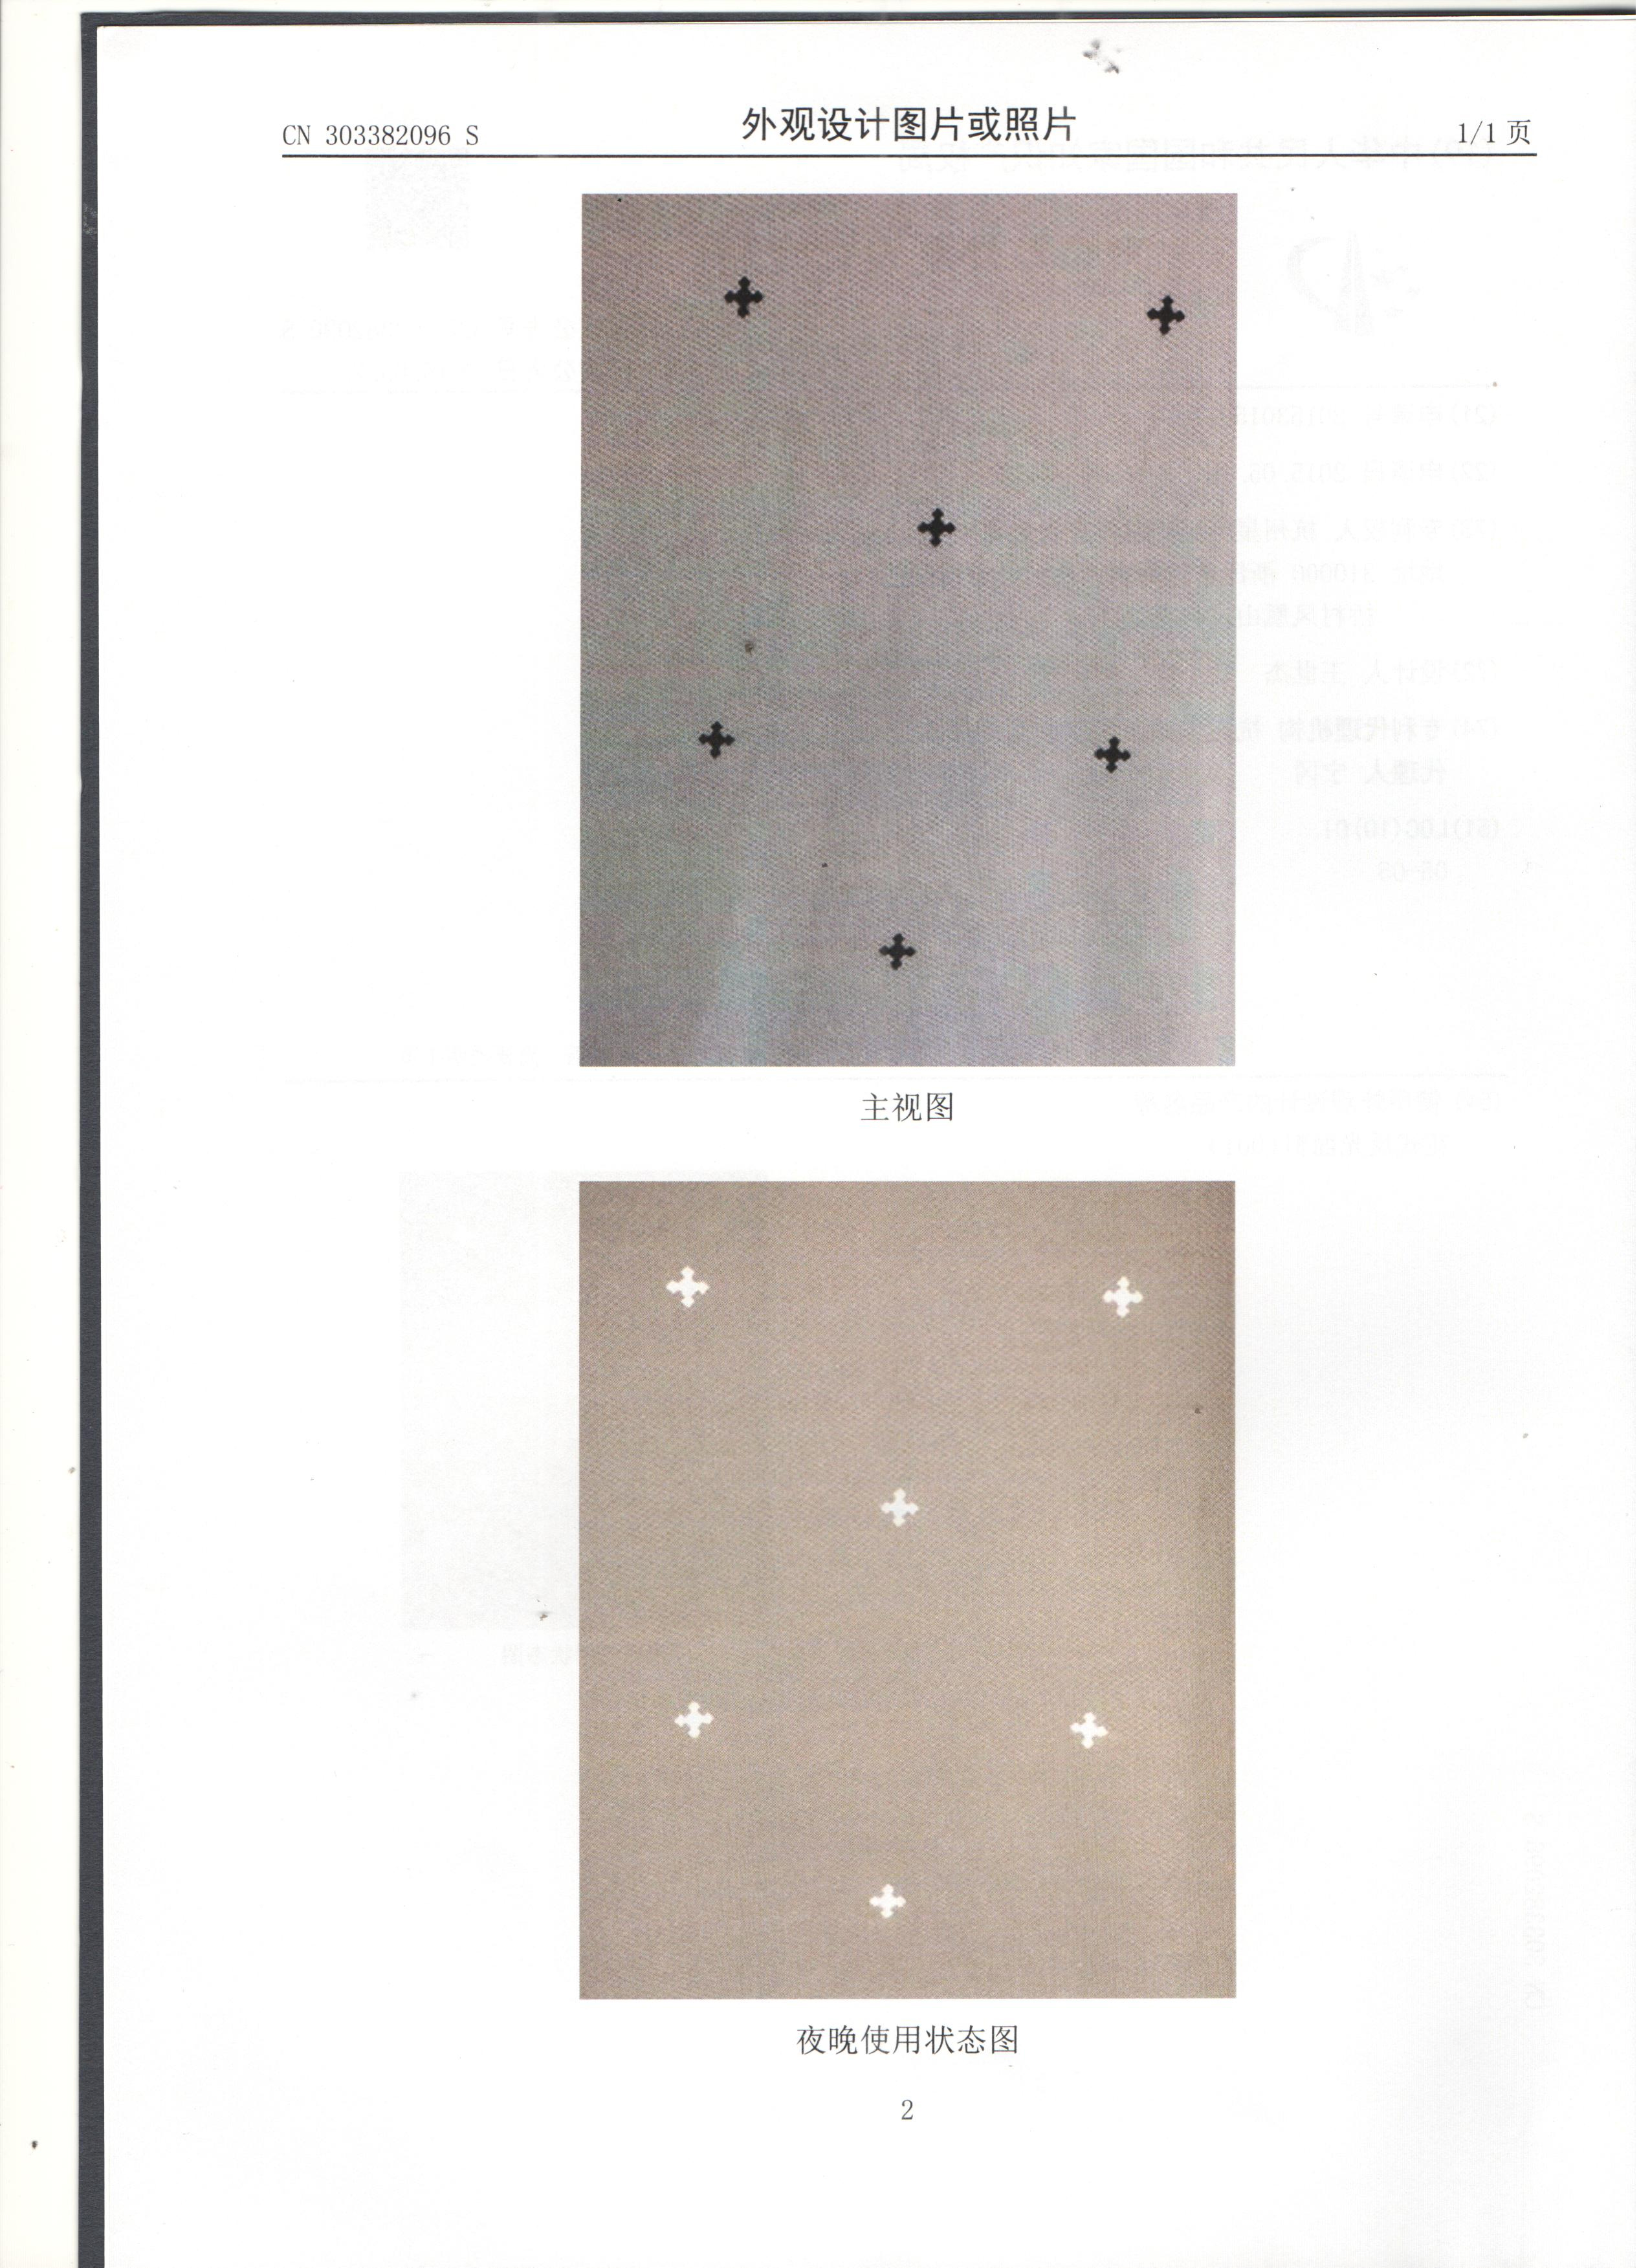 星华新材花式反光面料（001）外观设计专利产品：十字星图案